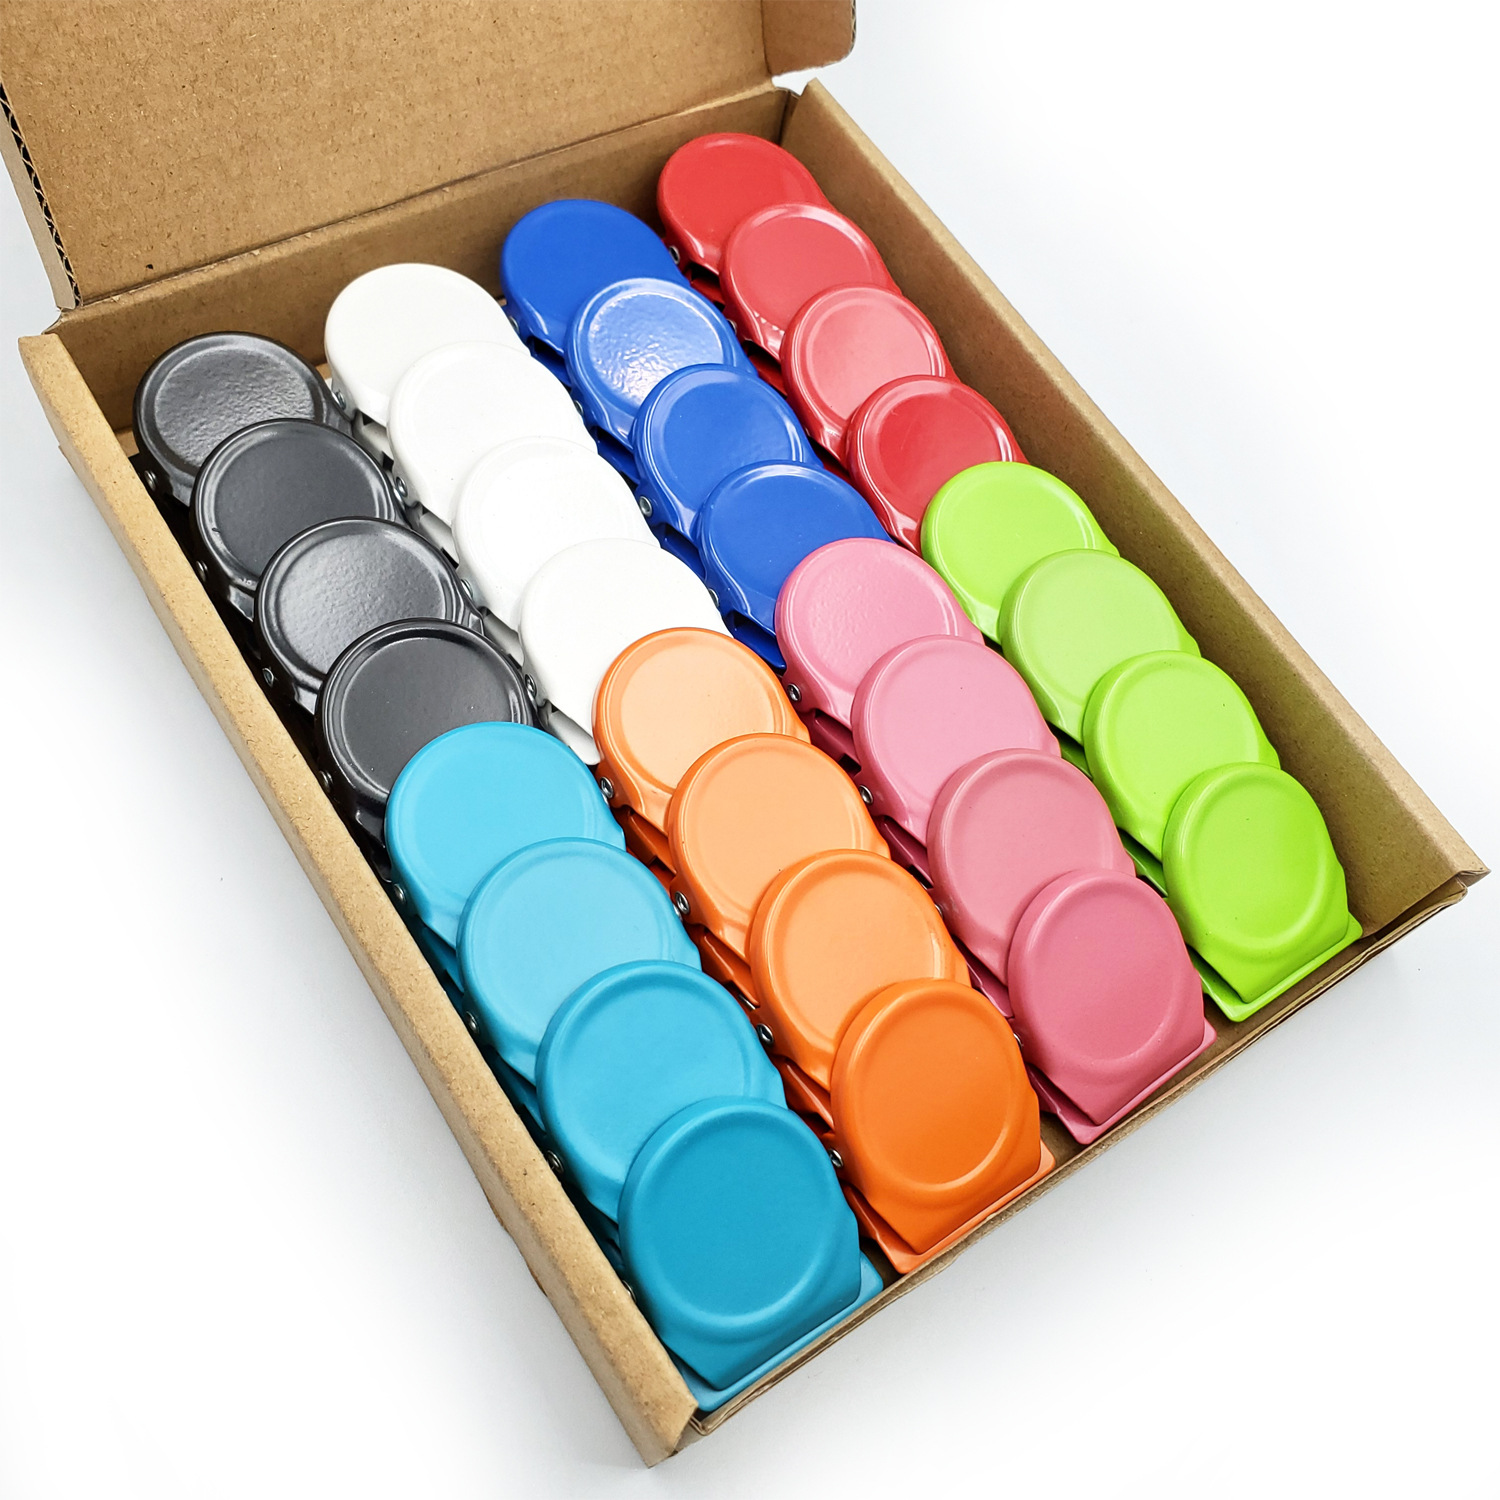 【现货纸盒装】亚马逊热卖金属夹子彩色磁铁夹子创意方形磁夹夹子